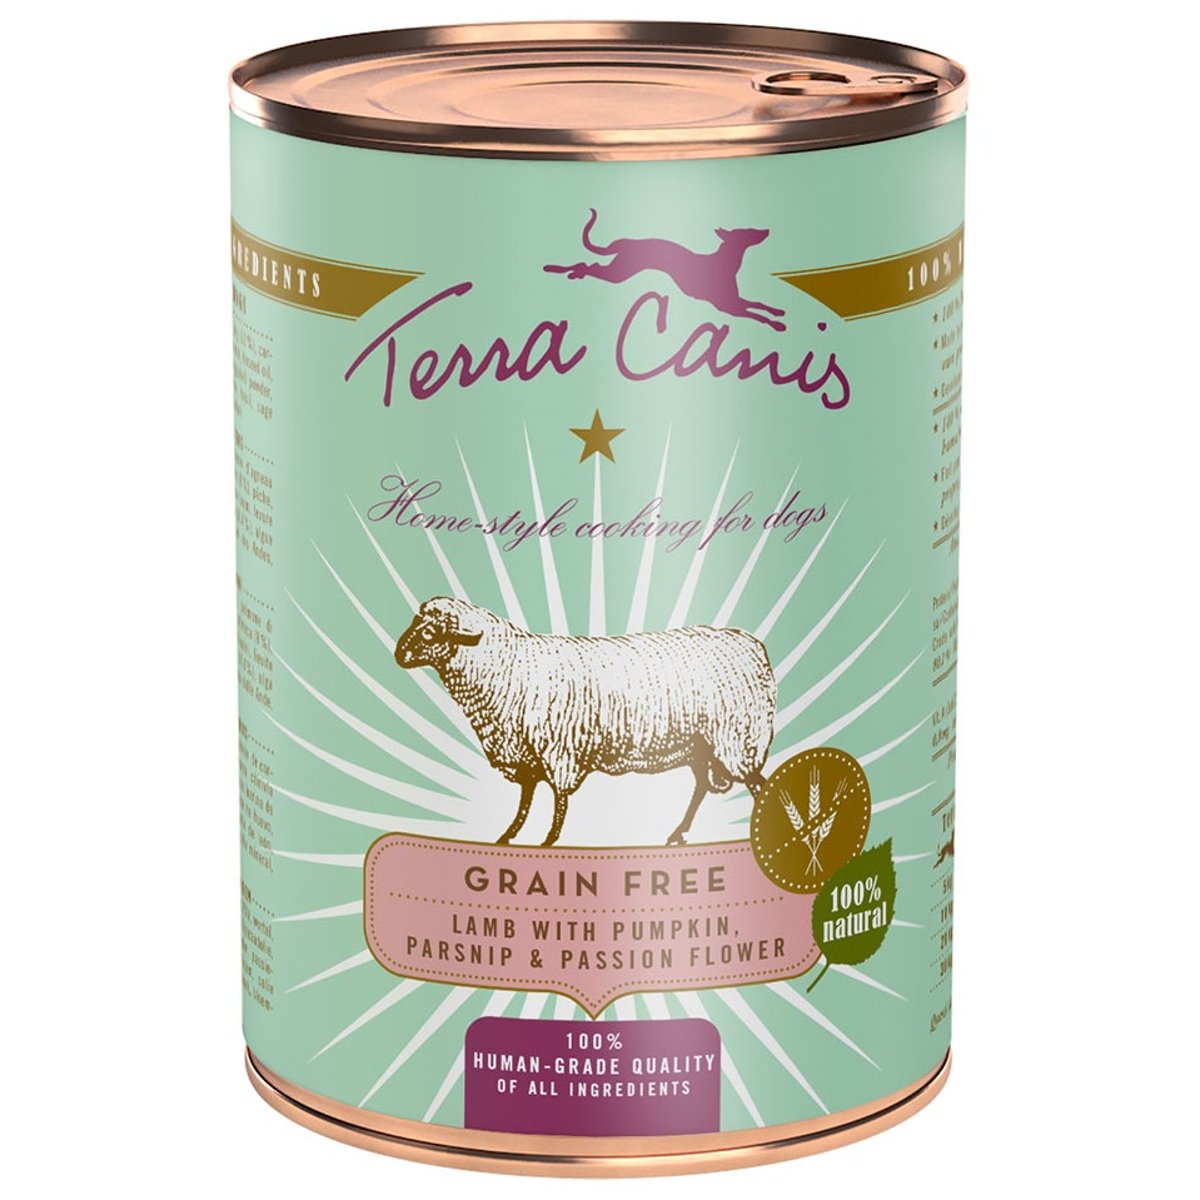 Terra Canis Grain Free konzerva jehněčí s dýní, pastinákem a mučenkou pro psy